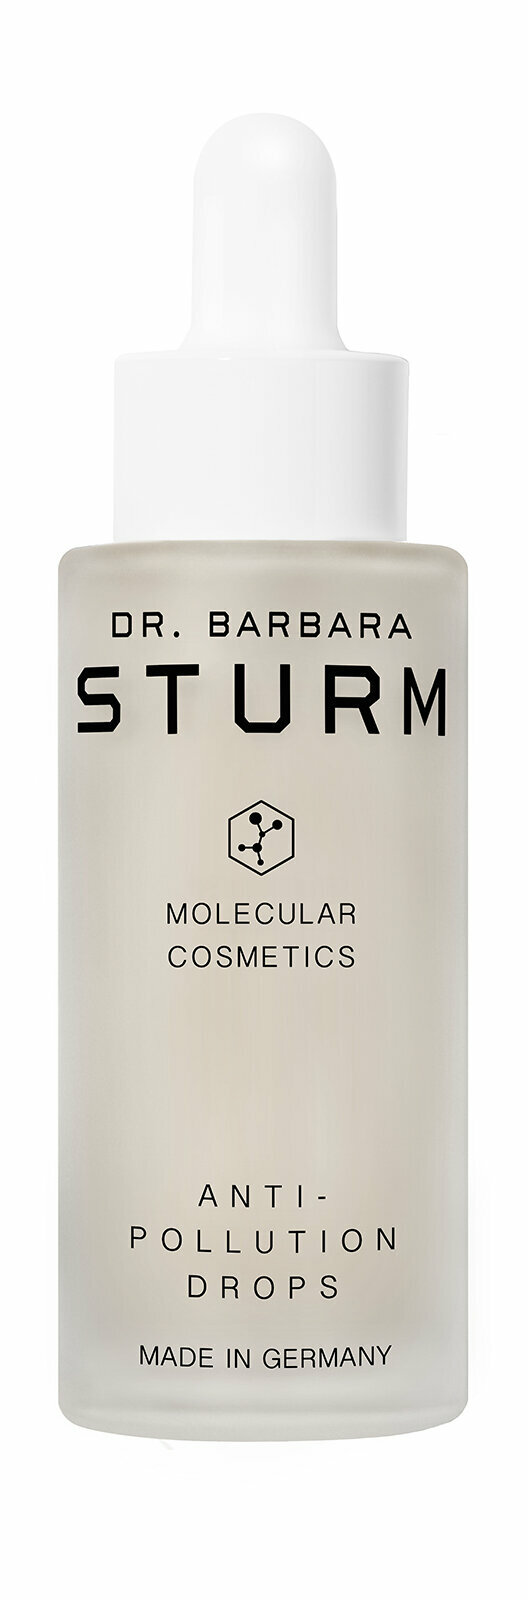 Сыворотка для защиты кожи лица от загрязнейний окружающей среды Dr Barbara Sturm Anti Pollution Drops